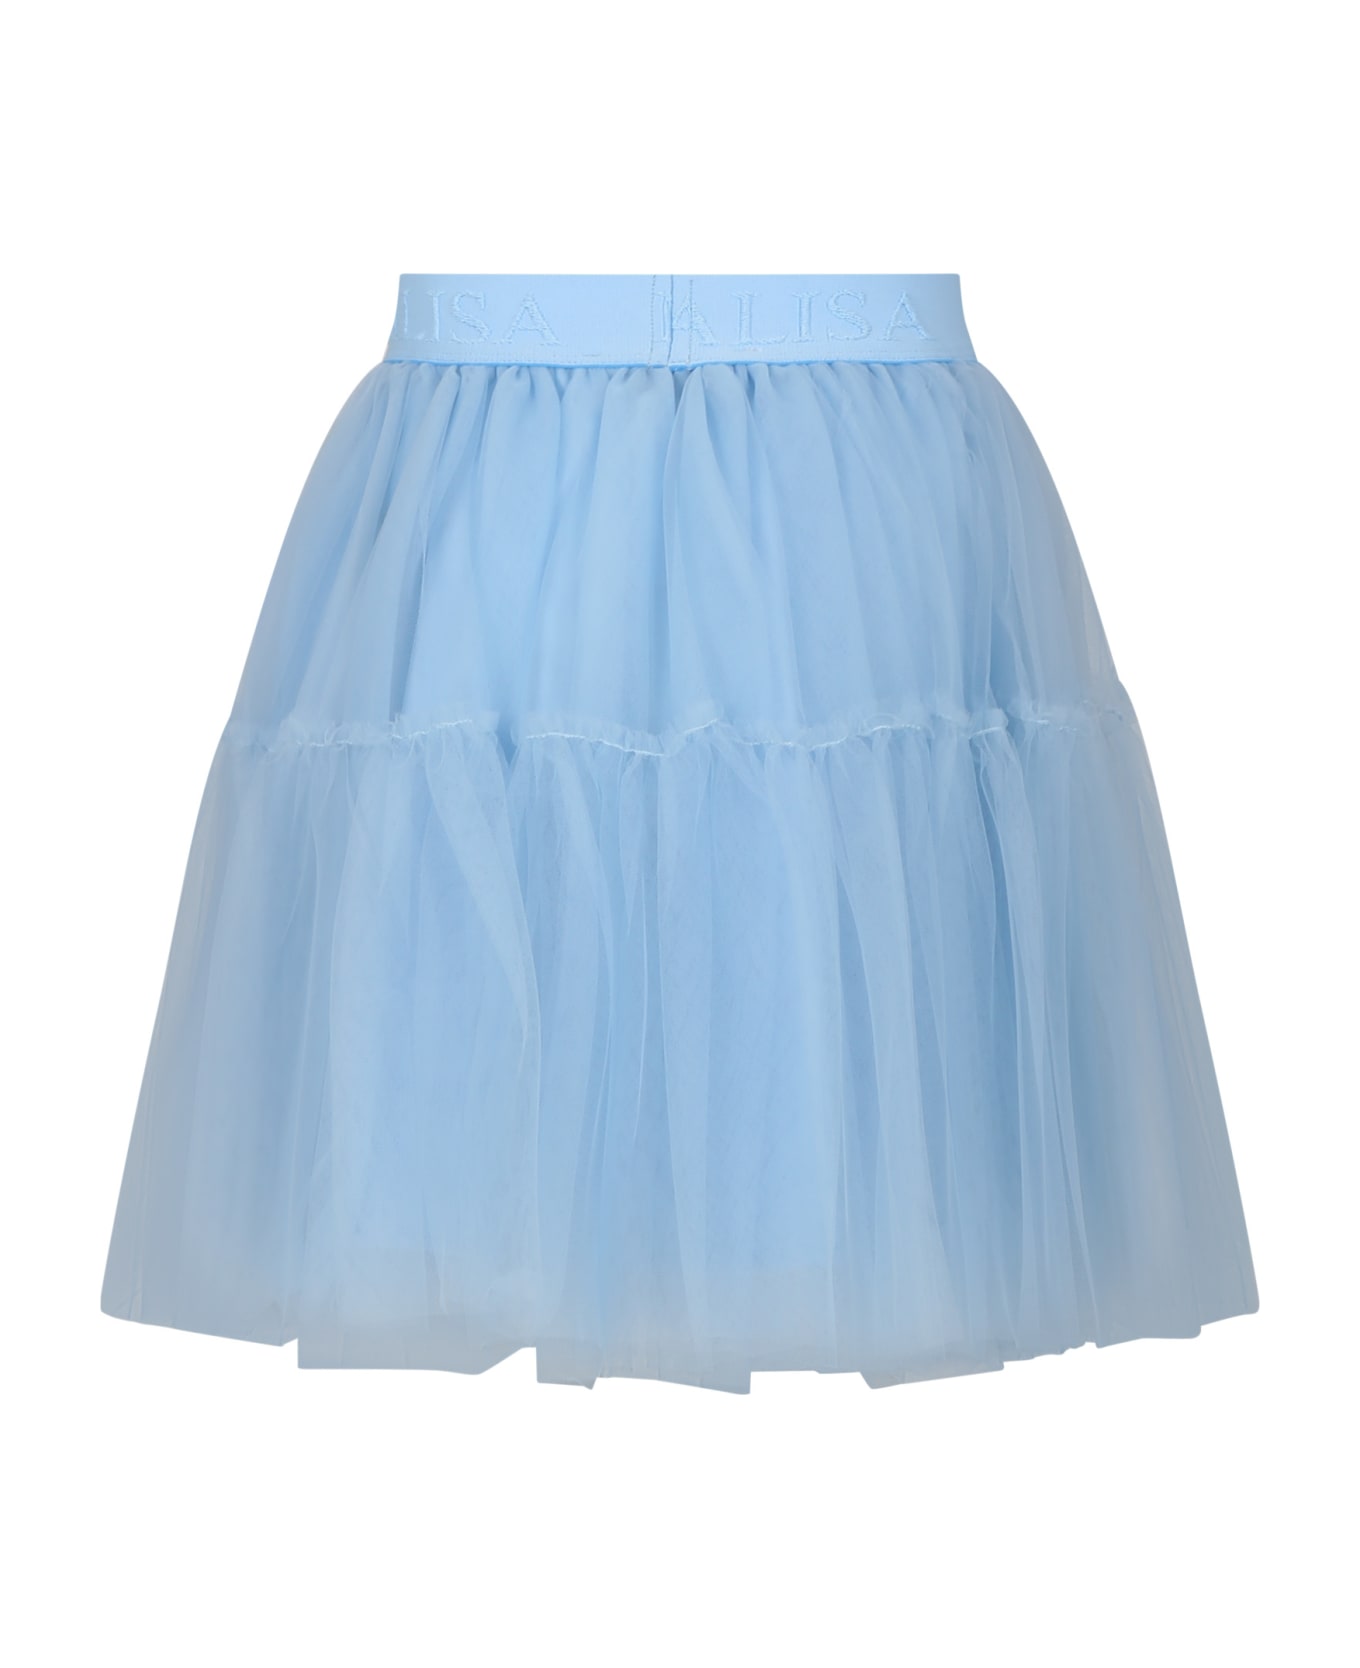 Monnalisa Light Blue Elegant Tulle Skirt For Girl - Light Blue